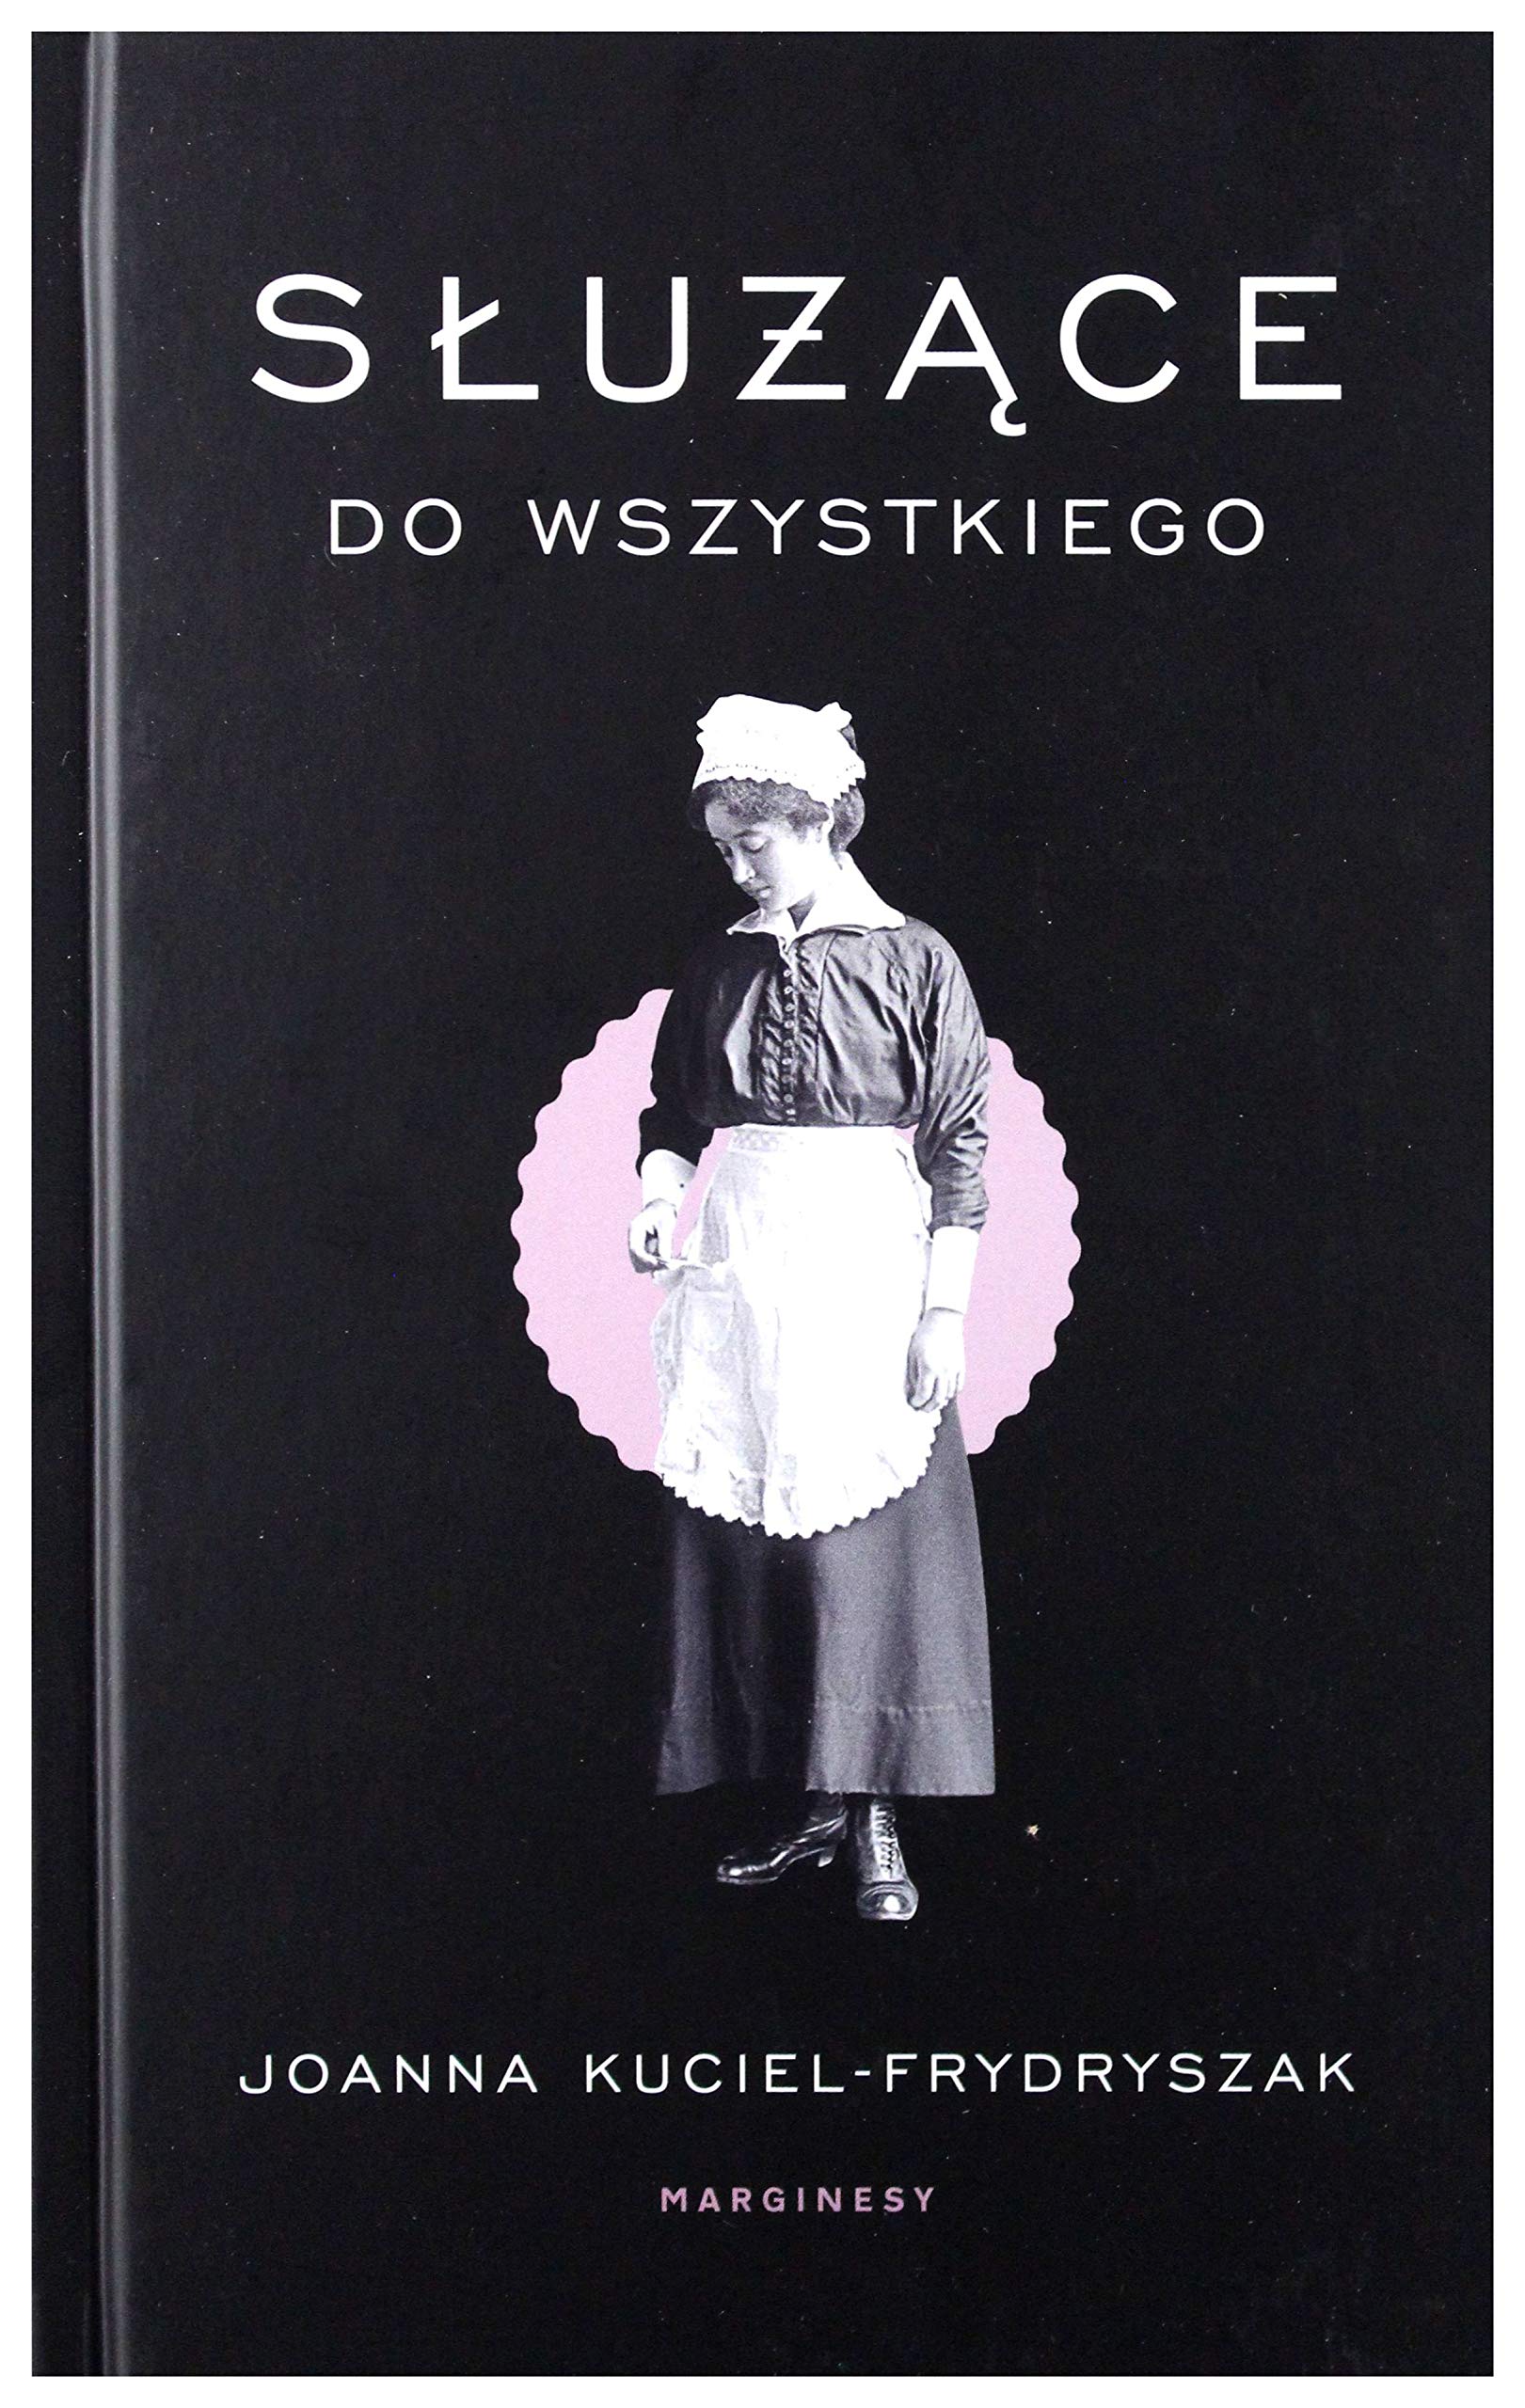 Sluzace do wszystkiego (Polish Edition)